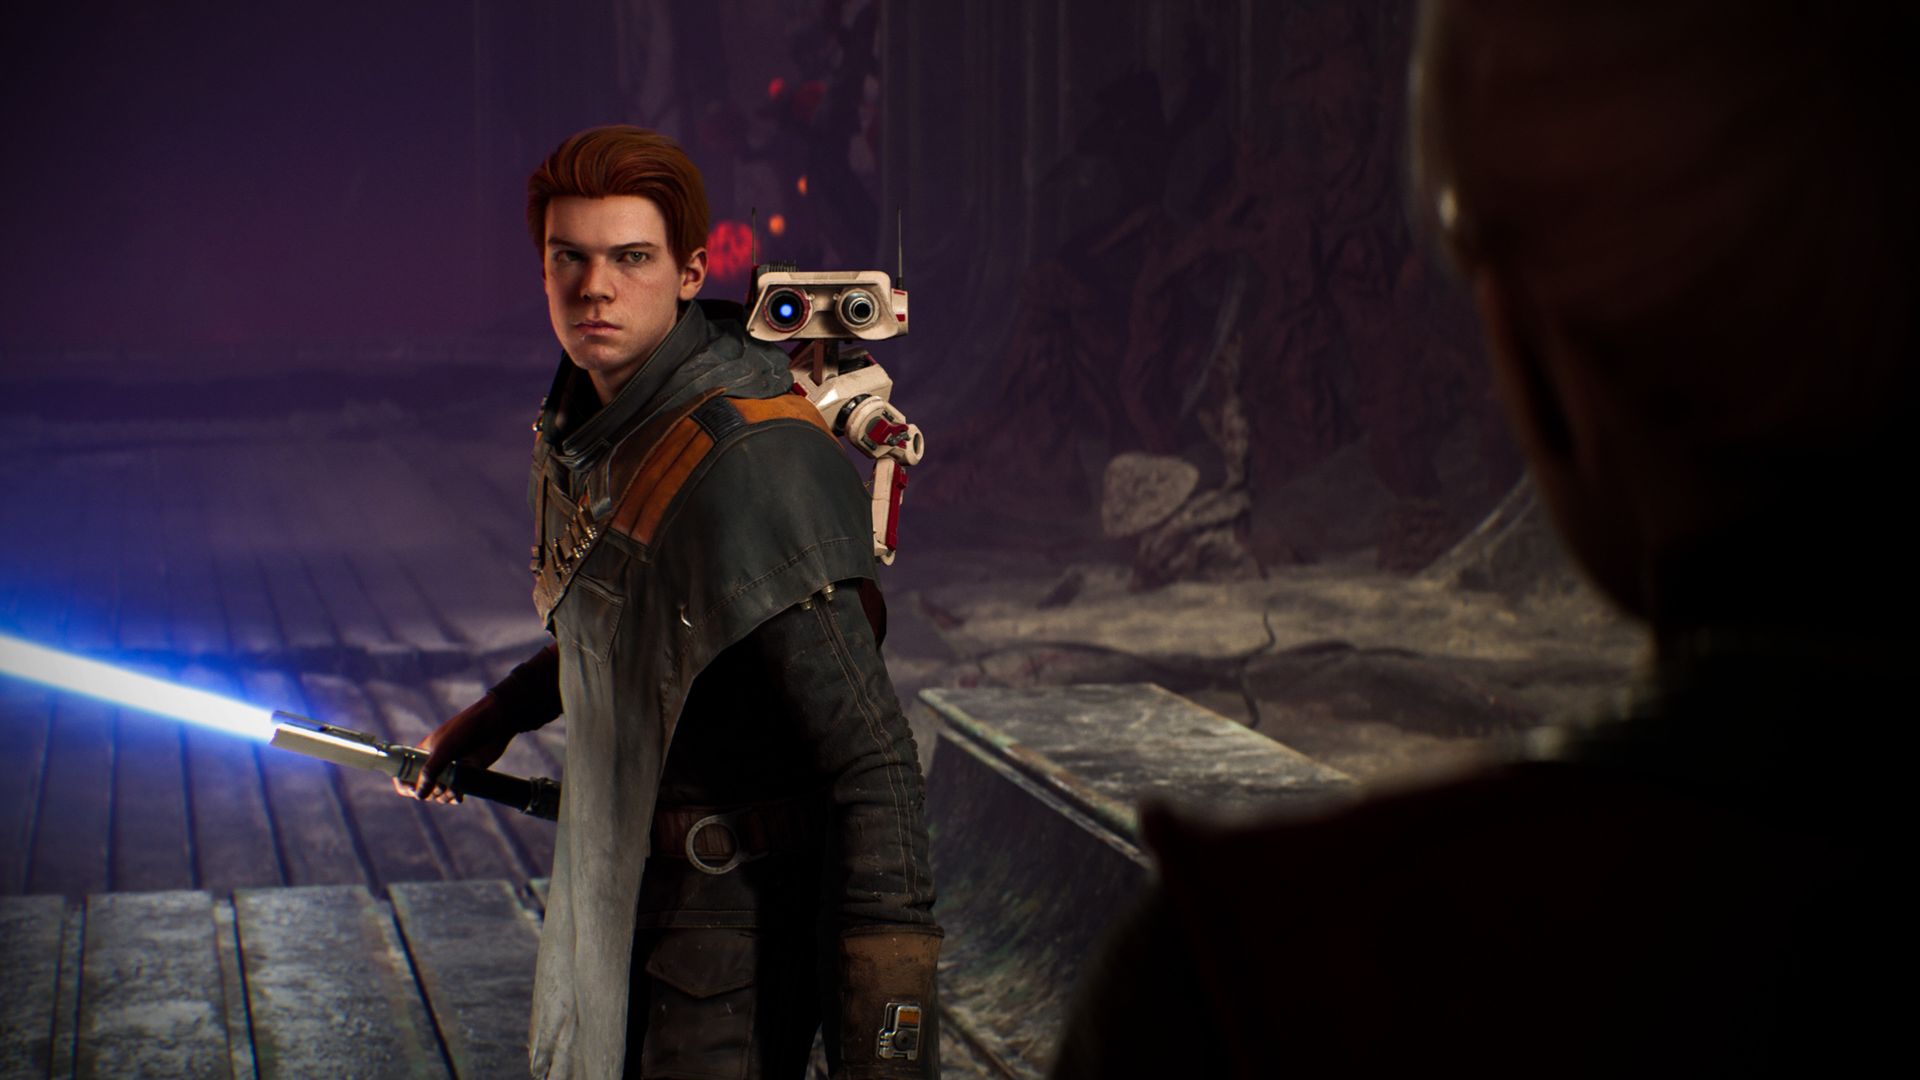 Video game screenshot of a man holding a lightsaber